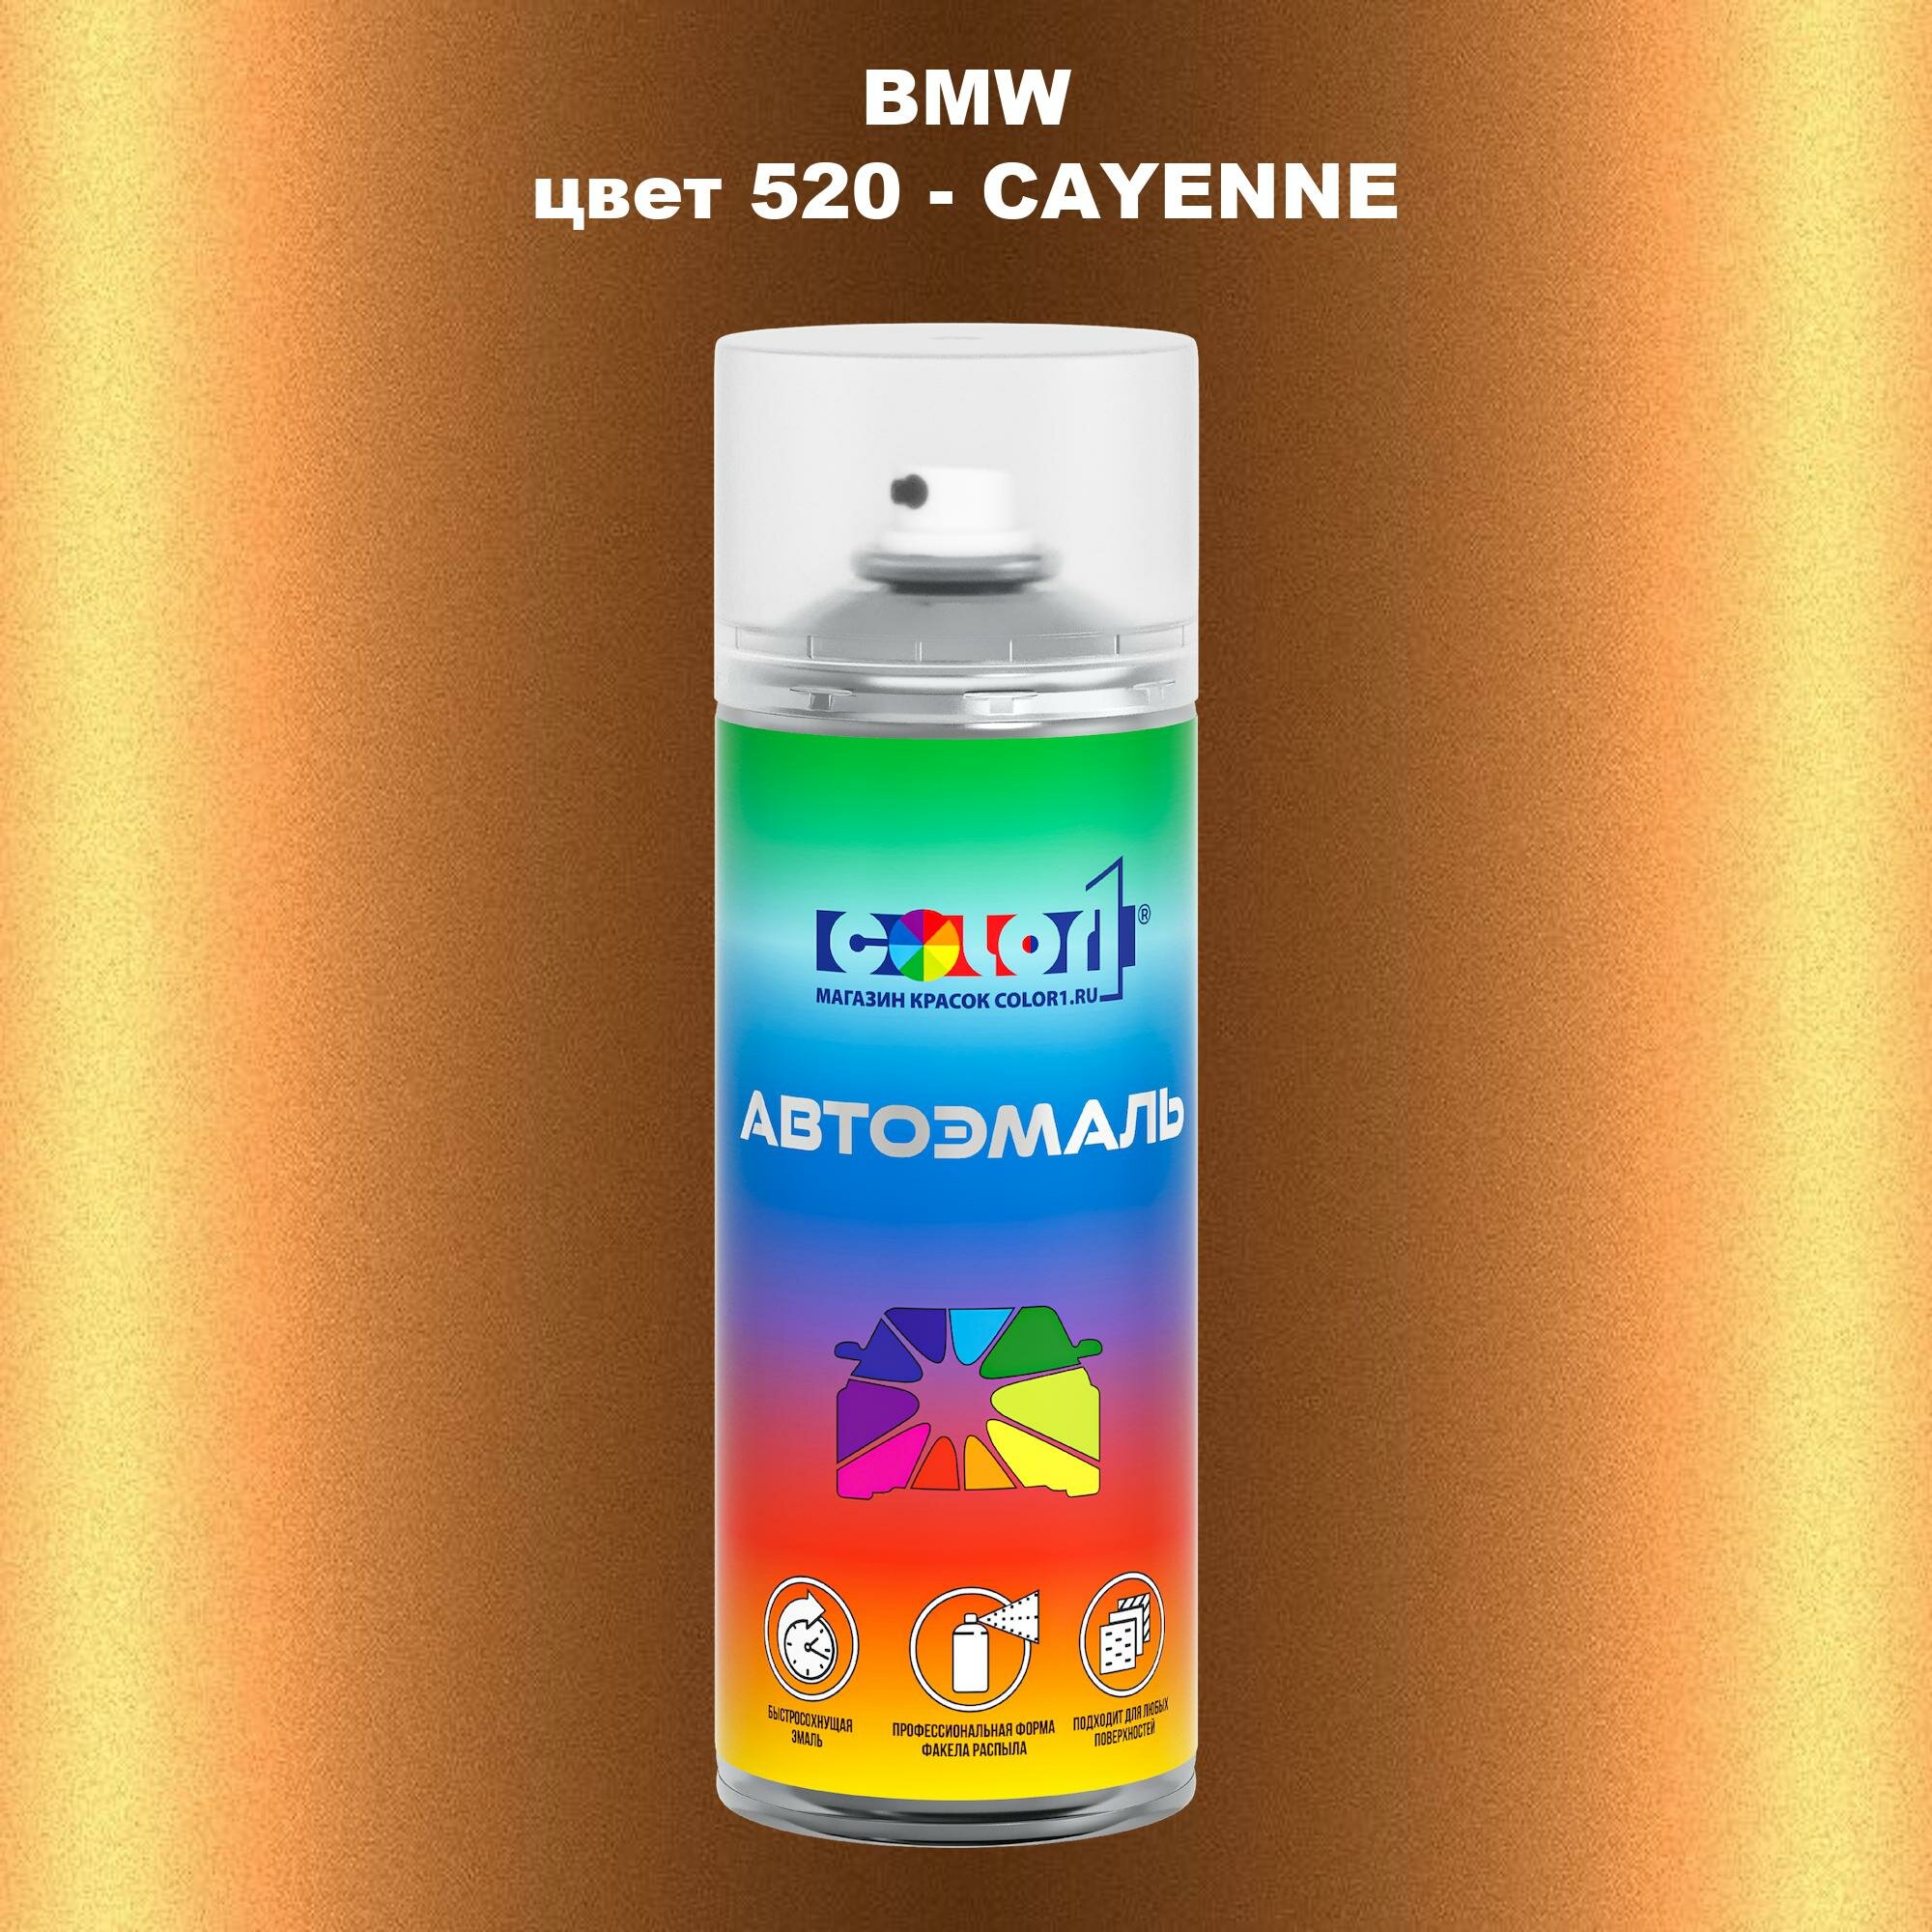 Аэрозольная краска COLOR1 для BMW, цвет 520 - CAYENNE